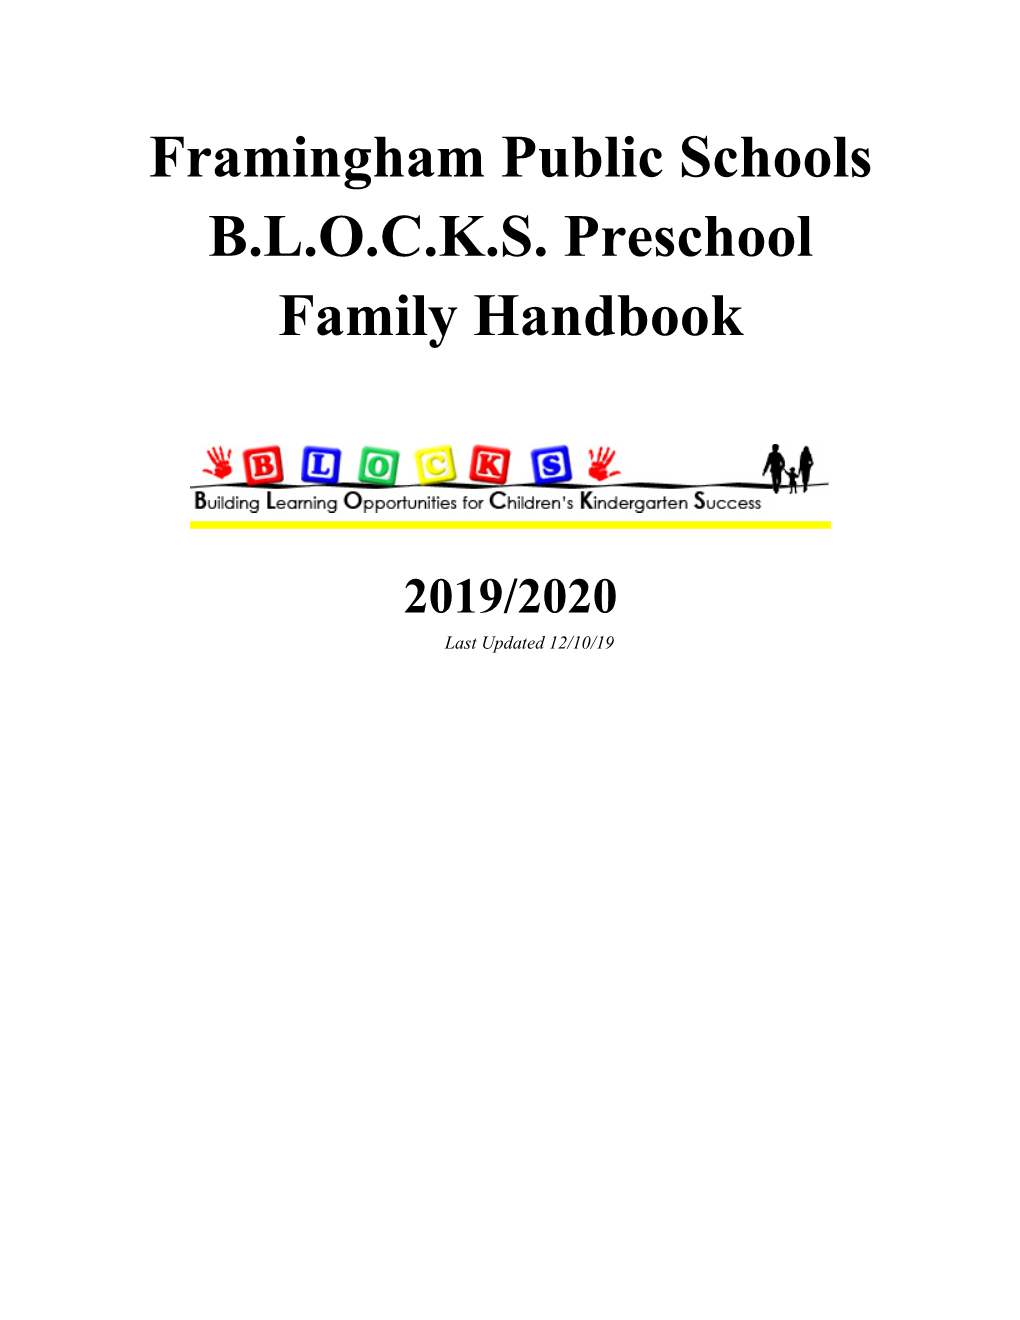 BLOCKS Family Handbook 2019-2020